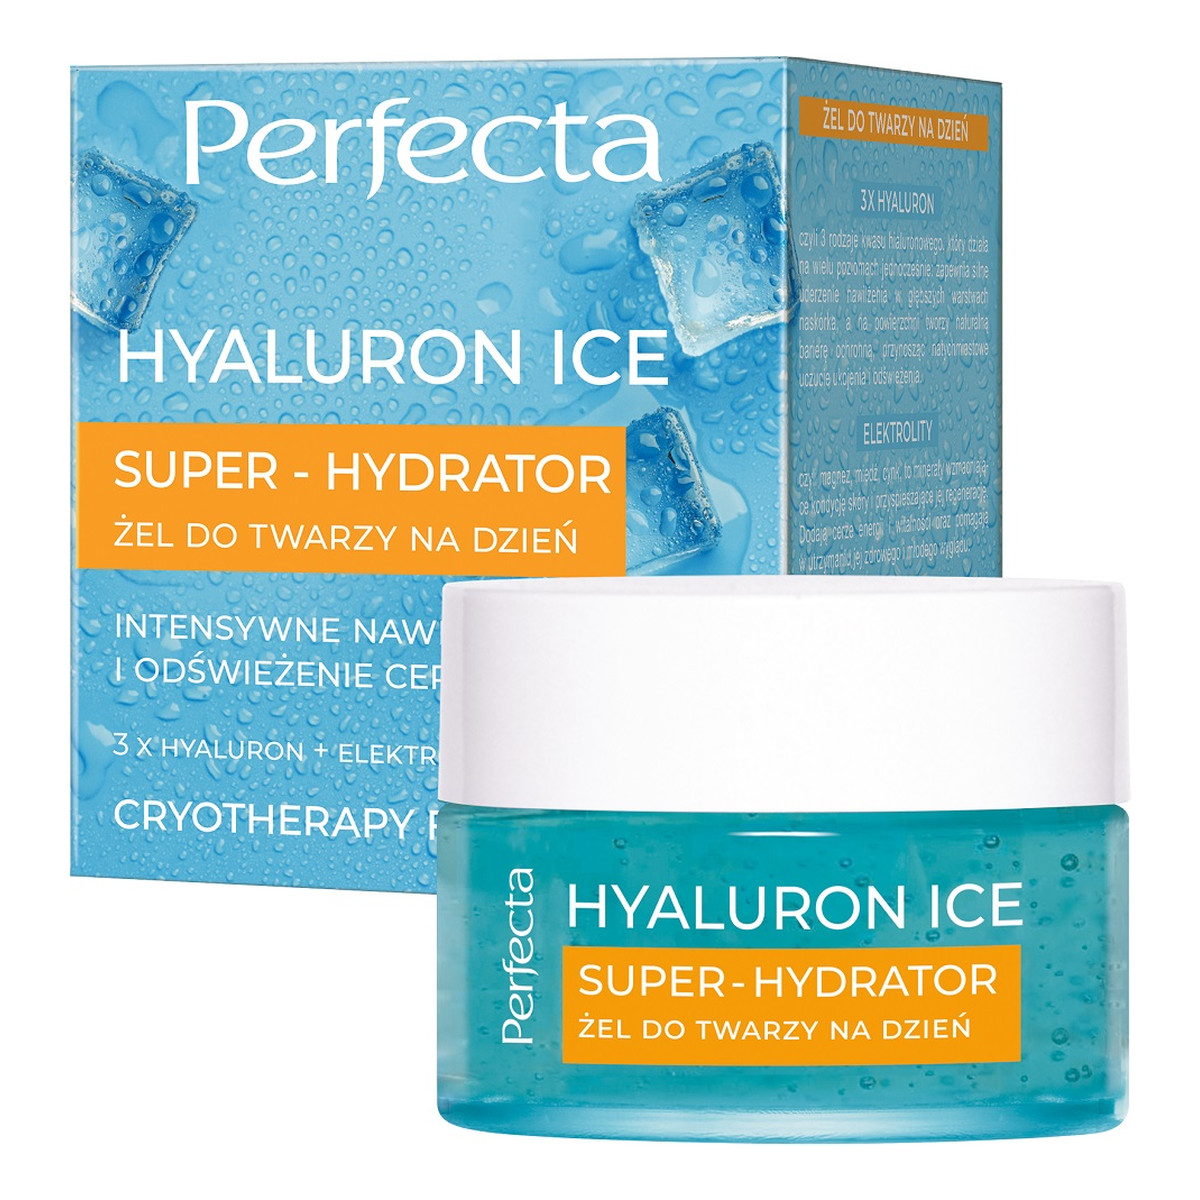 Perfecta Hyaluron Ice Super-Hydrator Żel do twarzy na dzień 50ml